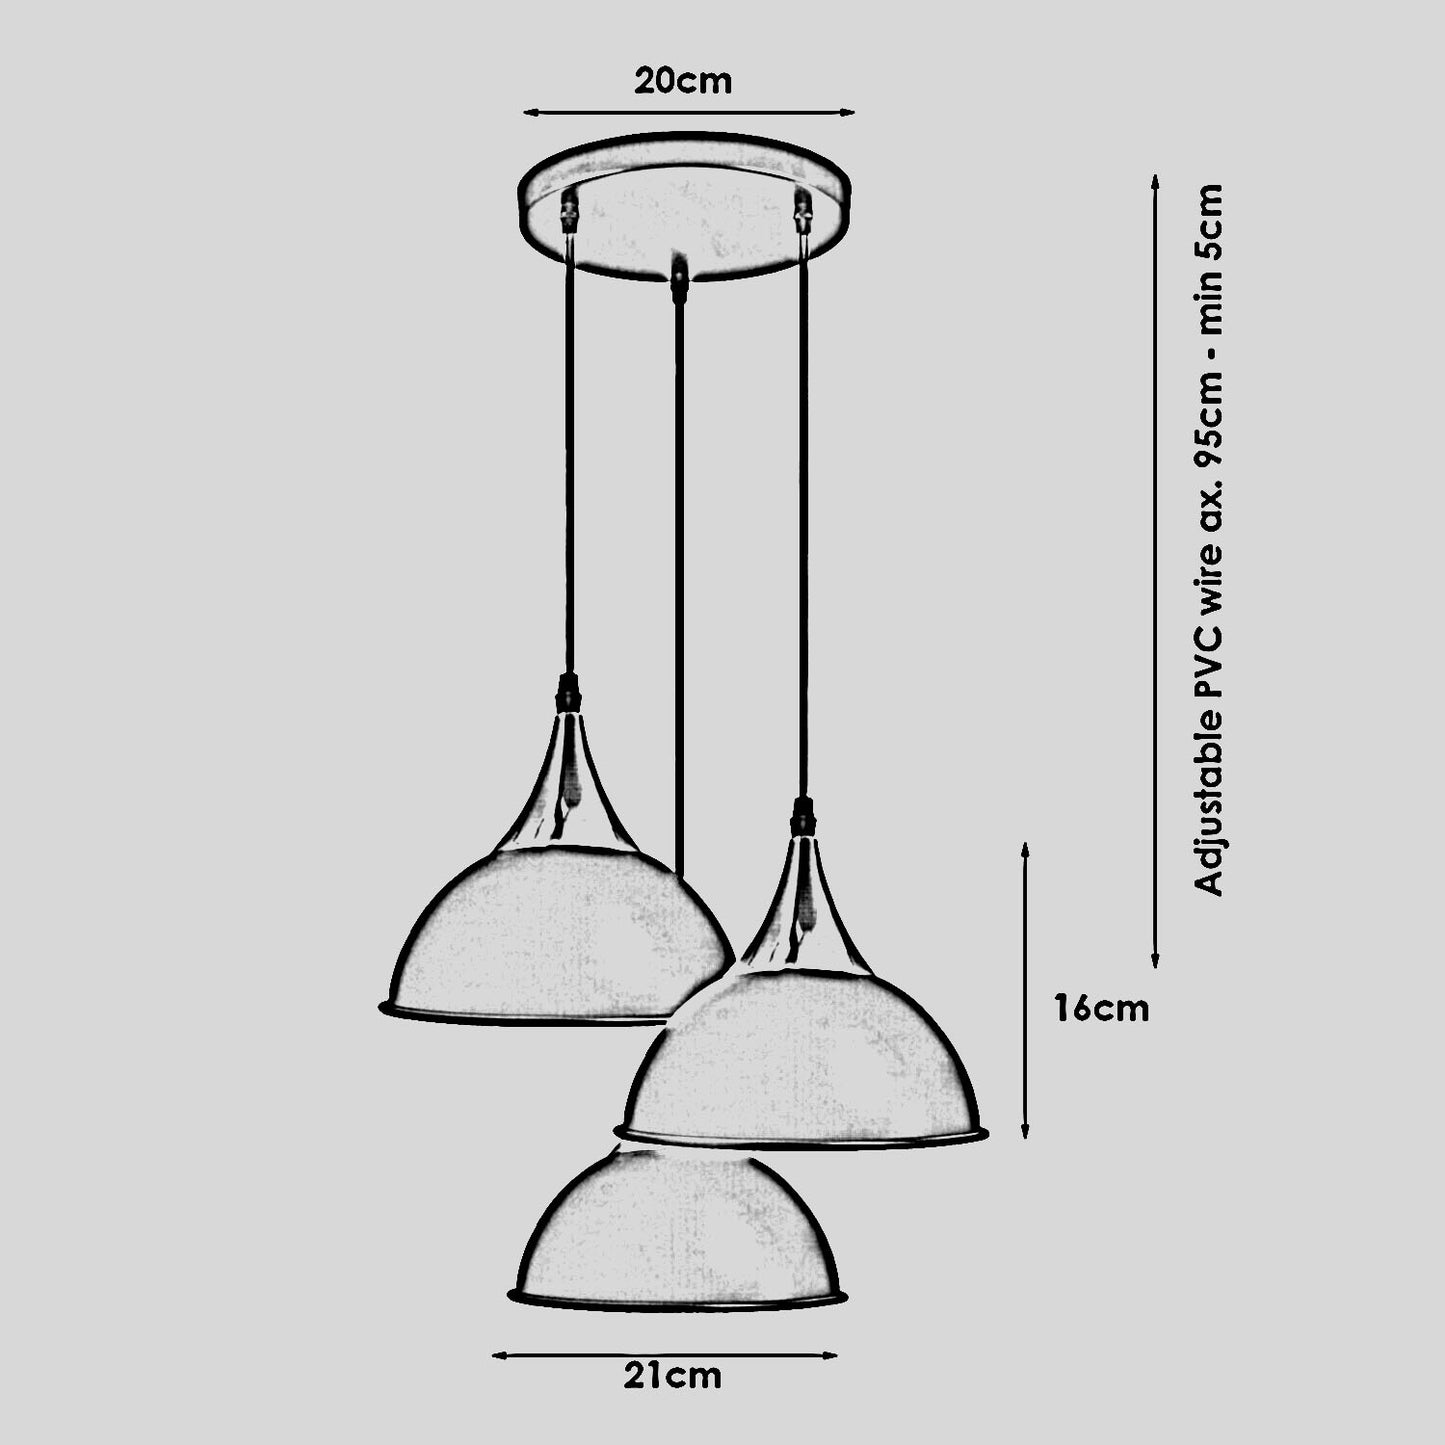 3-Wege-Vintage-Lampenschirm aus Metall, modern, zum Aufhängen, Retro-Deckenpendelleuchten, grau